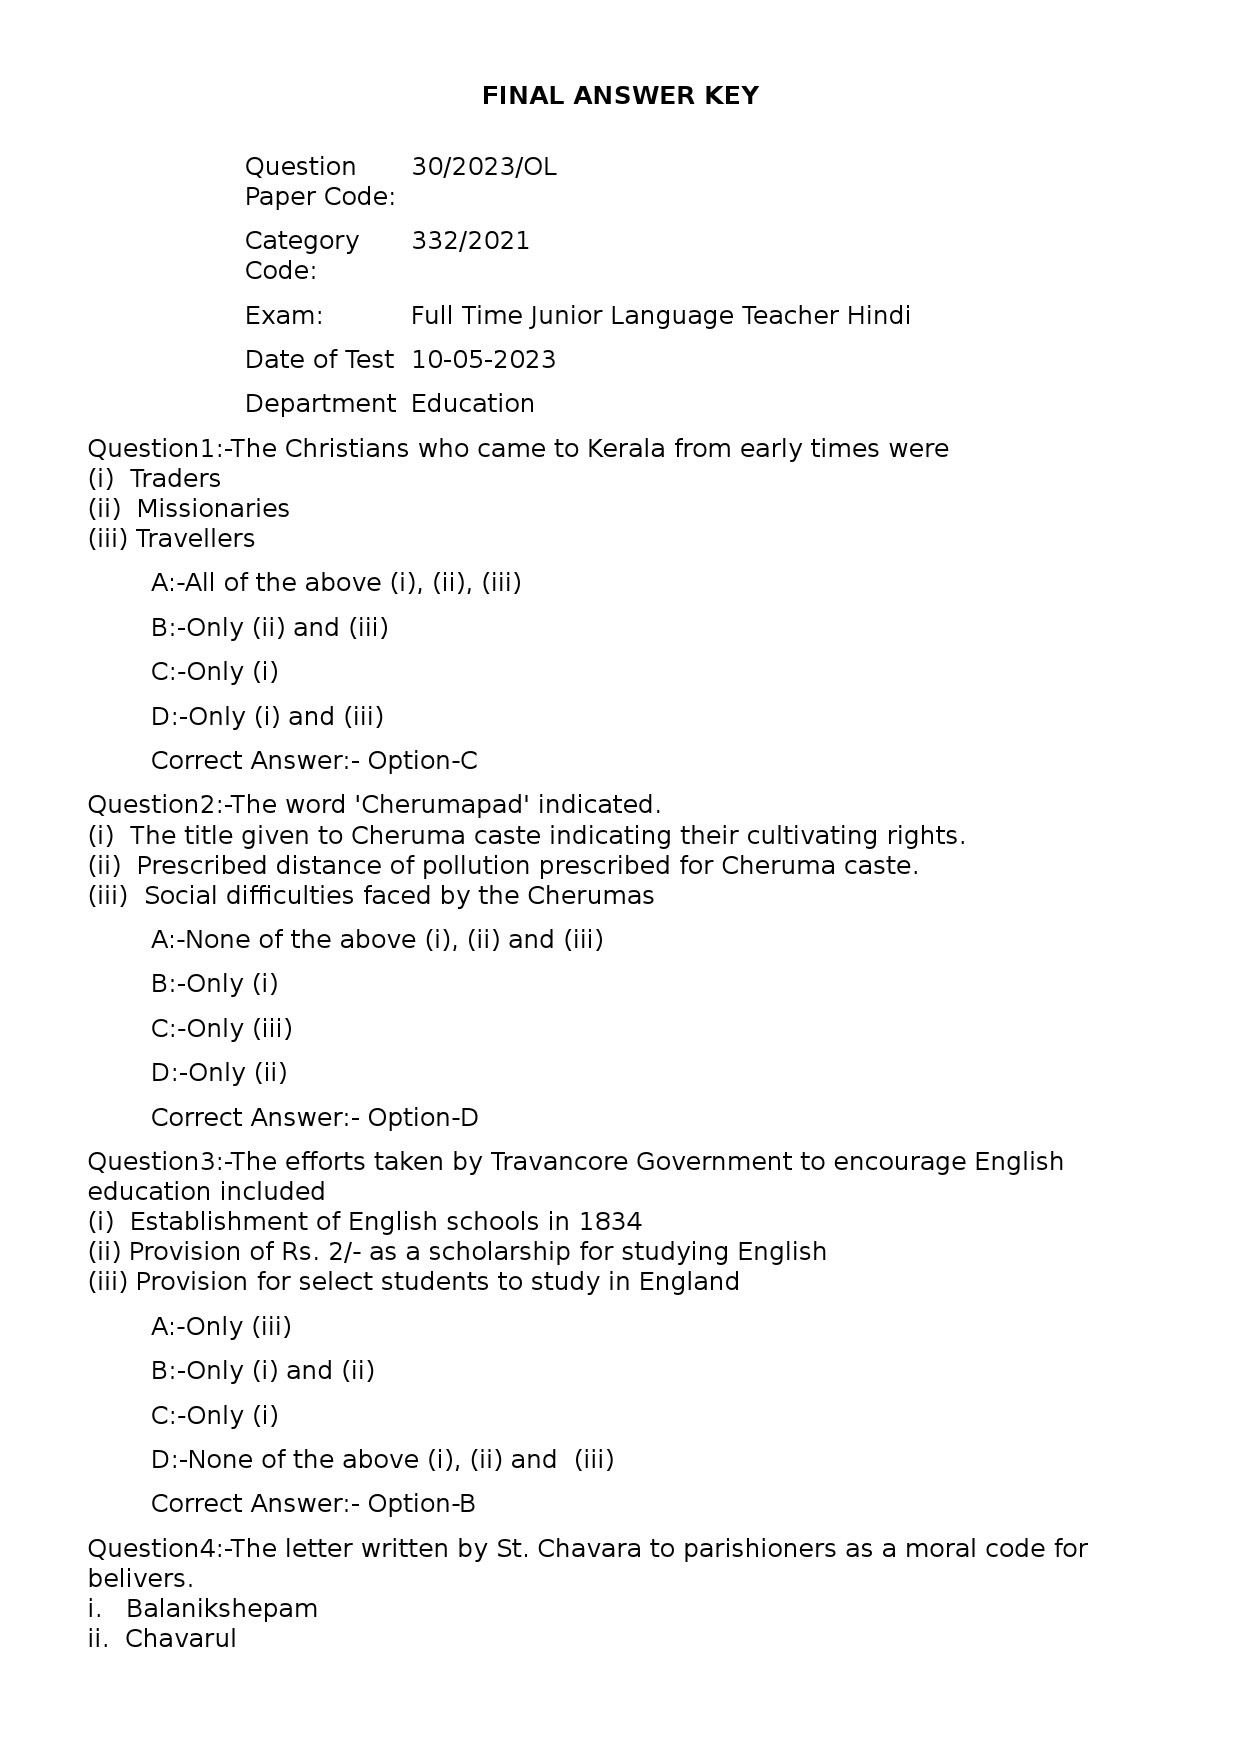 KPSC Full Time Junior Language Teacher Hindi Exam 2023 Code 302023OL 1